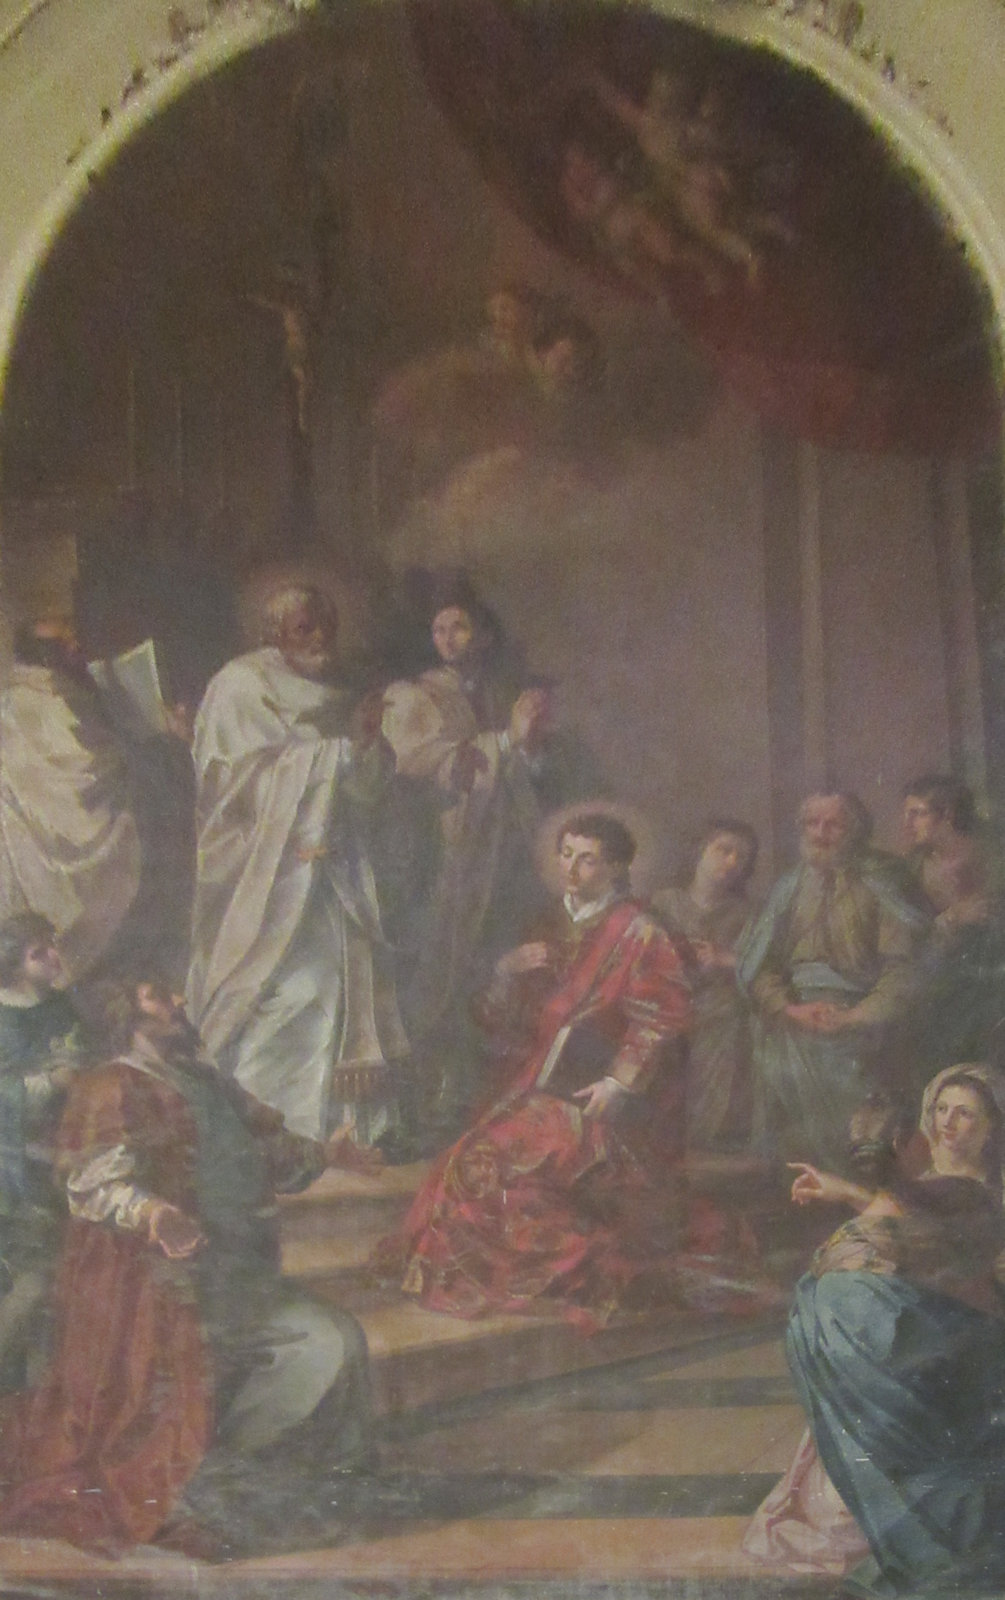 Matteo Desiderato „il Romano”: Philippus weiht seinen Diakon Philippus, 1806, in der in der Kirche des Klosters San Filippo in Agira